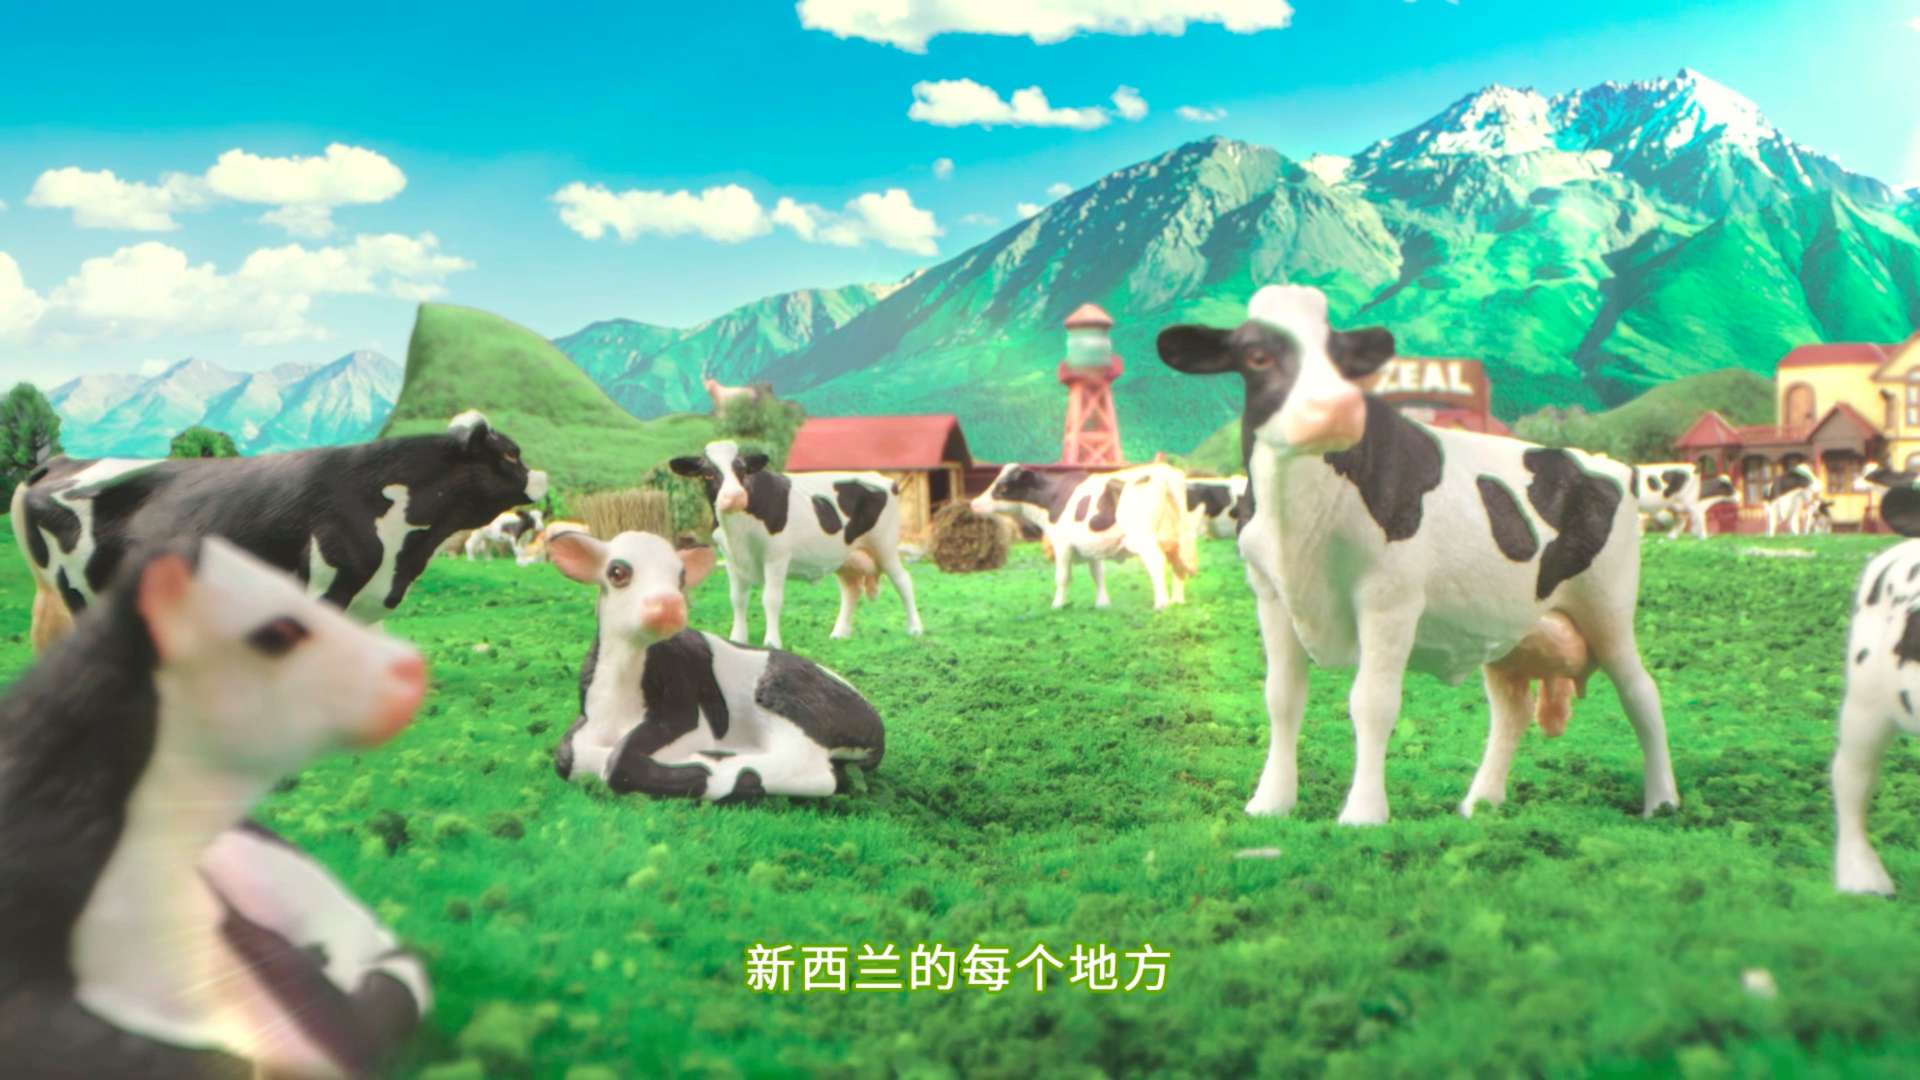 ZEAL 造个新西兰 宠物食品概念广告